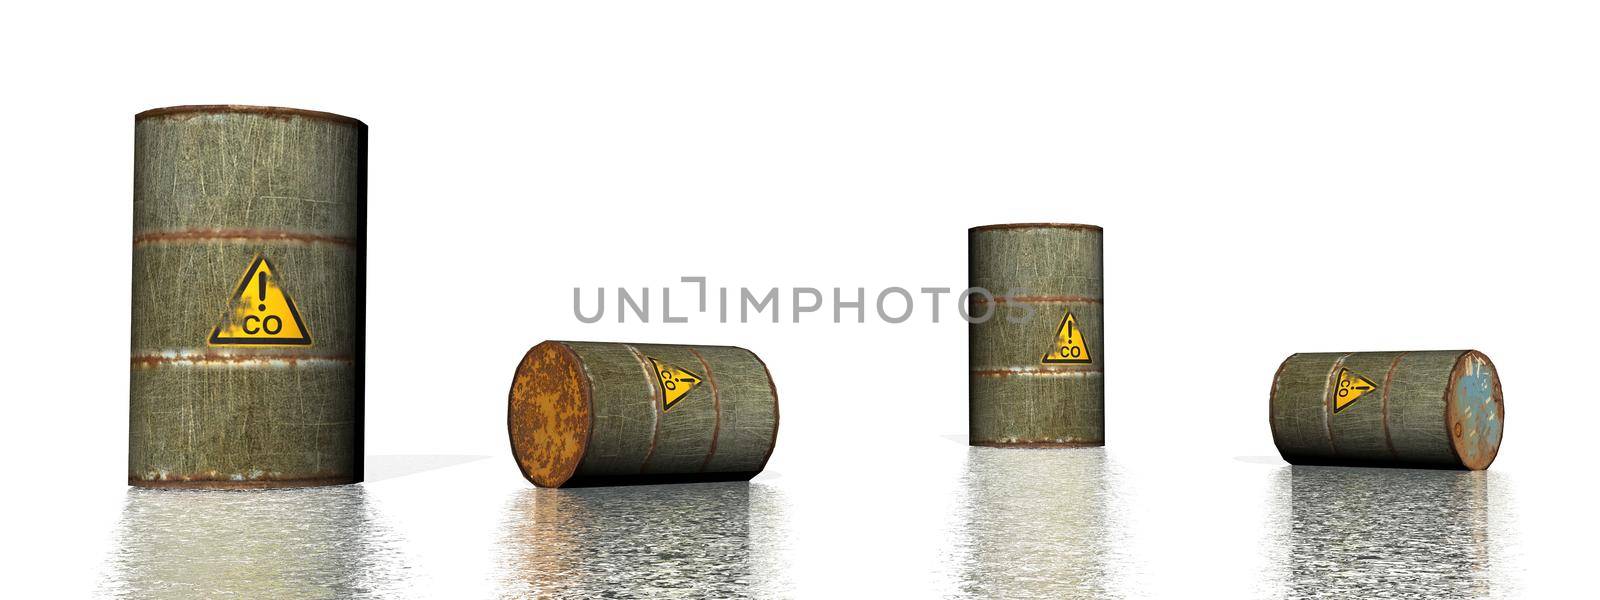 Four grey metallic carbon monoxide barrels - 3D render by Elenaphotos21